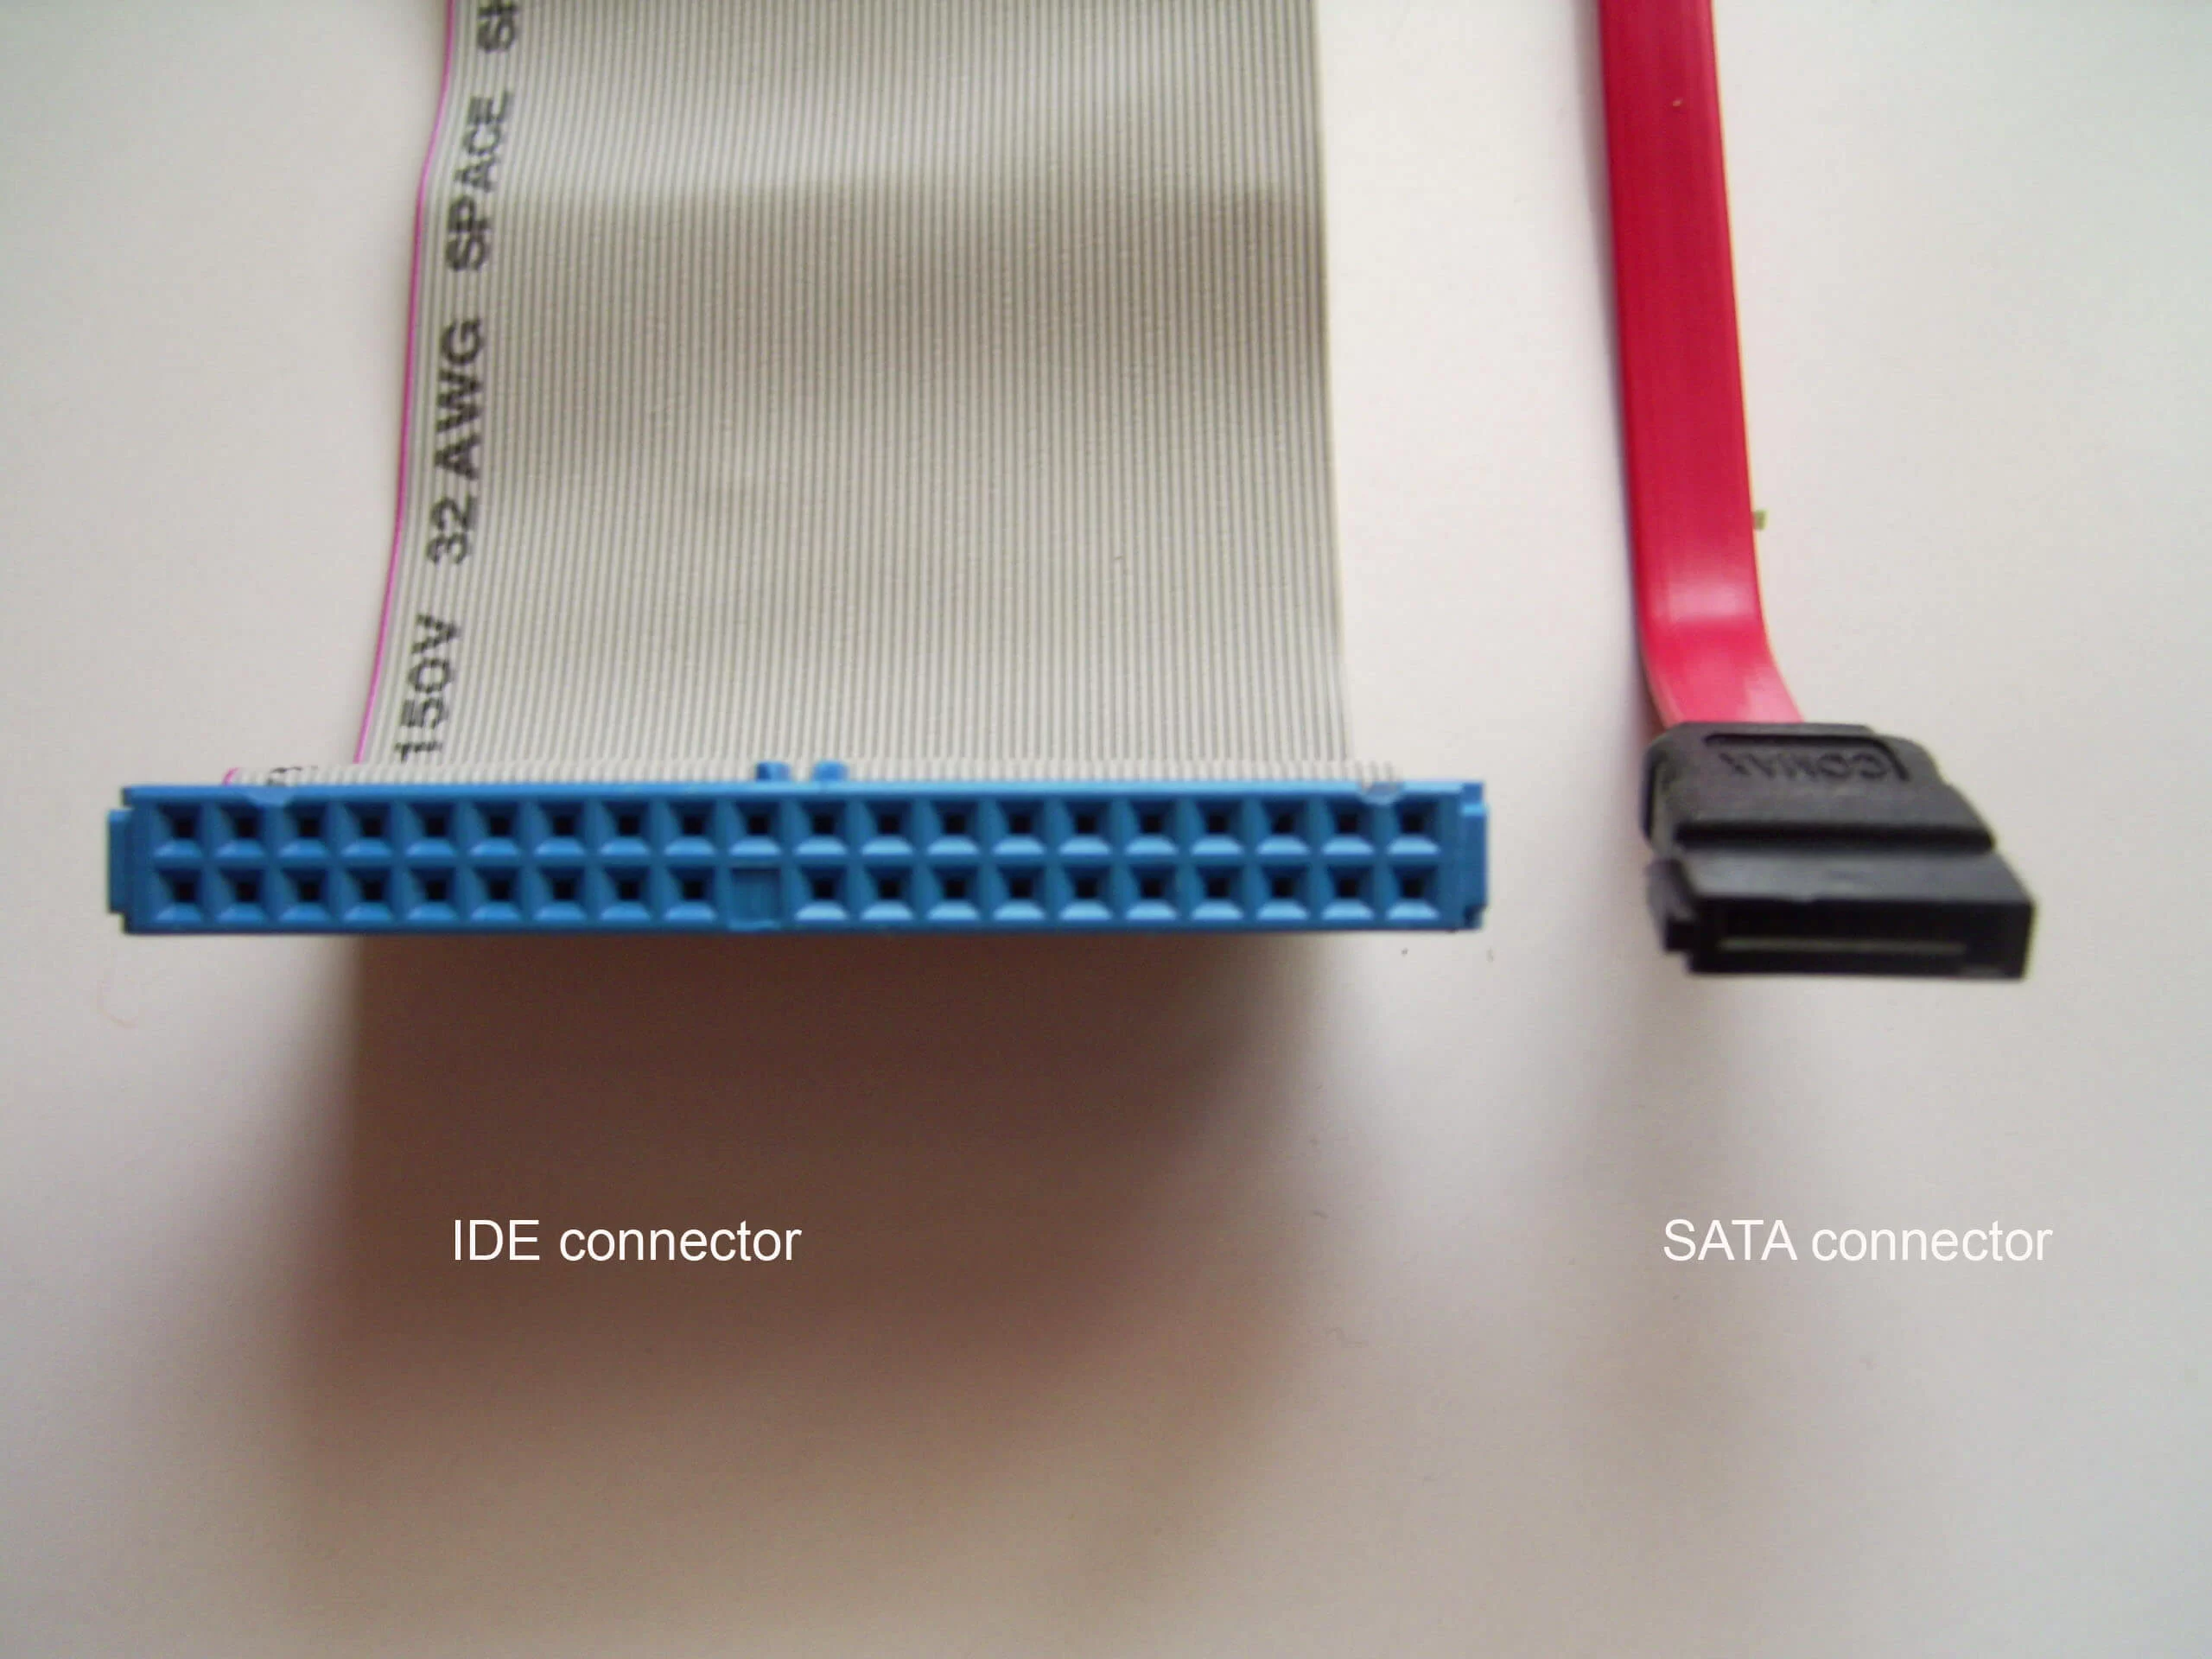 تصویر سمت راست کابل Sata و تصویر سمت چپ یک کابل IDE را نمایش میدهد، از این کابل ها برای اتصال هارد دیسک (حافظه) یا درایو سی دی و دی وی دی به ماد برد استفاده میشود .